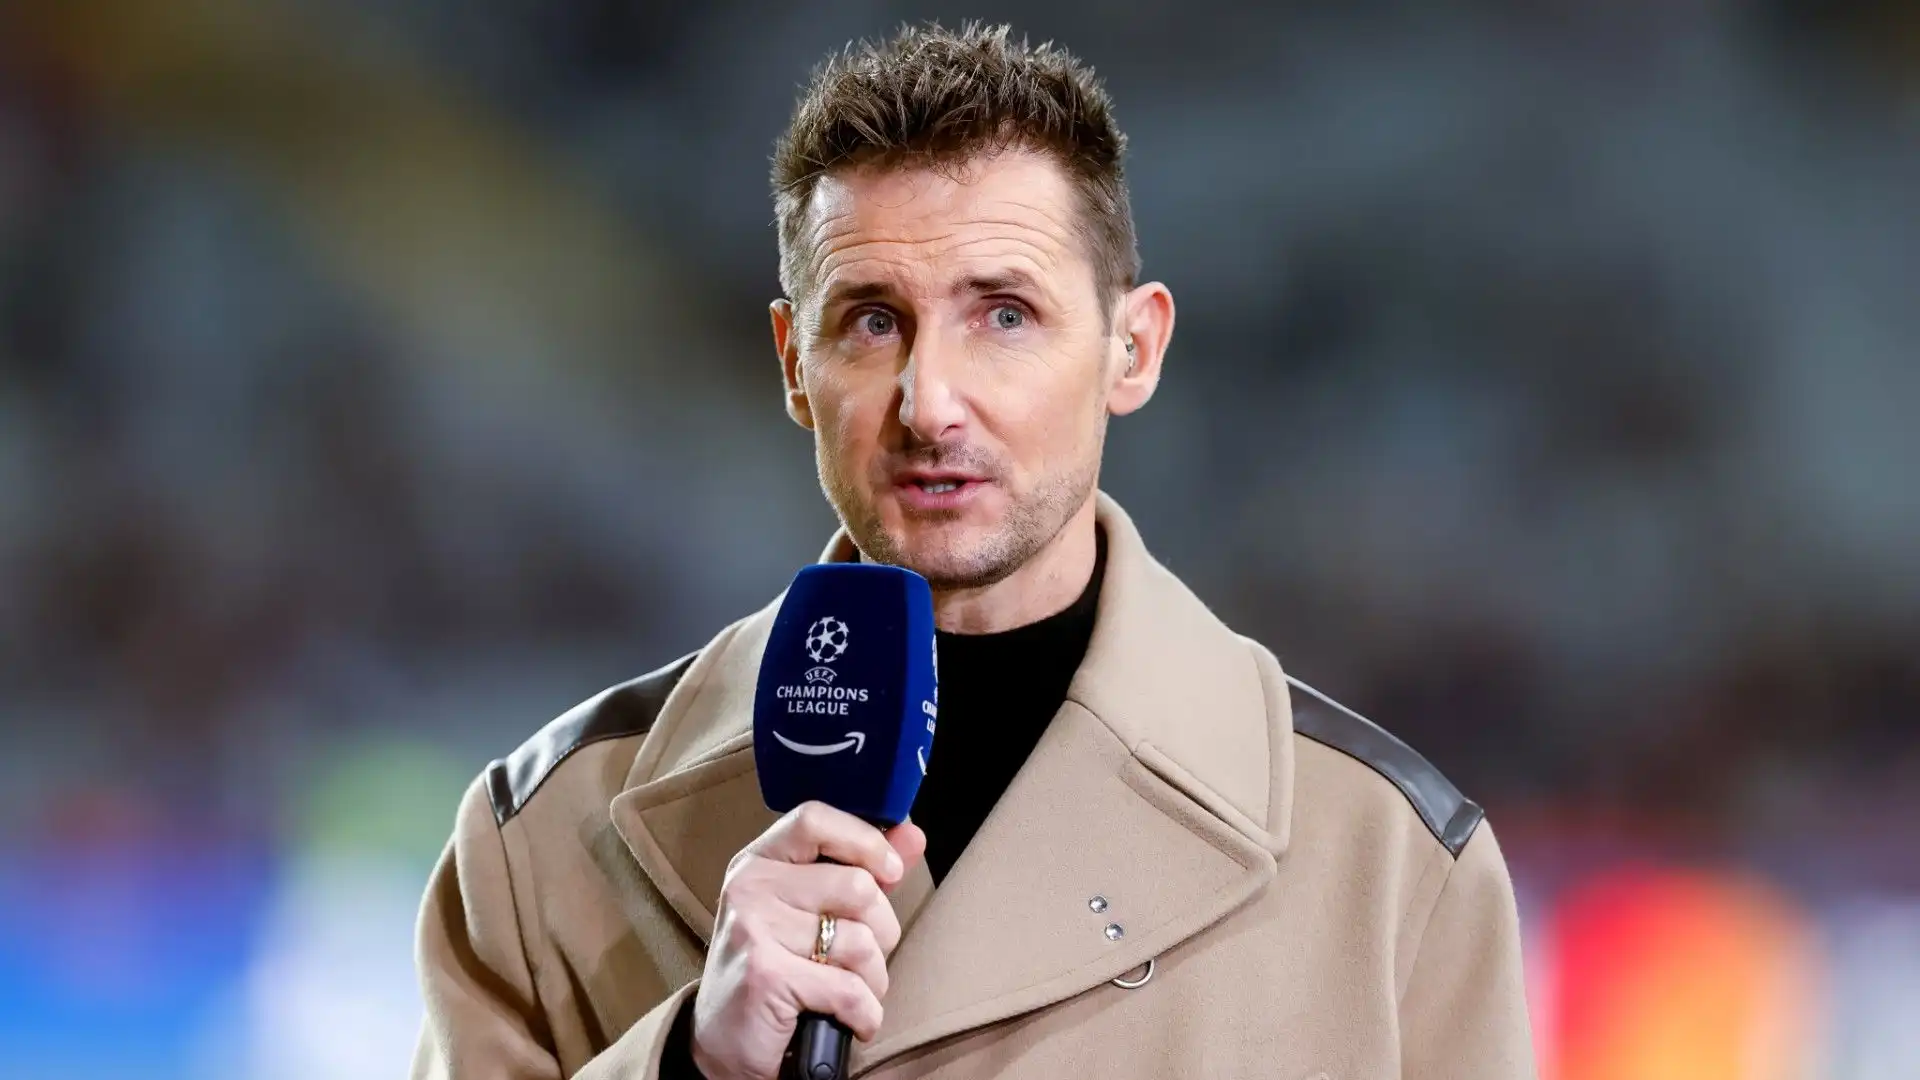 Miroslav Klose è amatissimo dai tifosi della Lazio, che lo ricordano con affetto